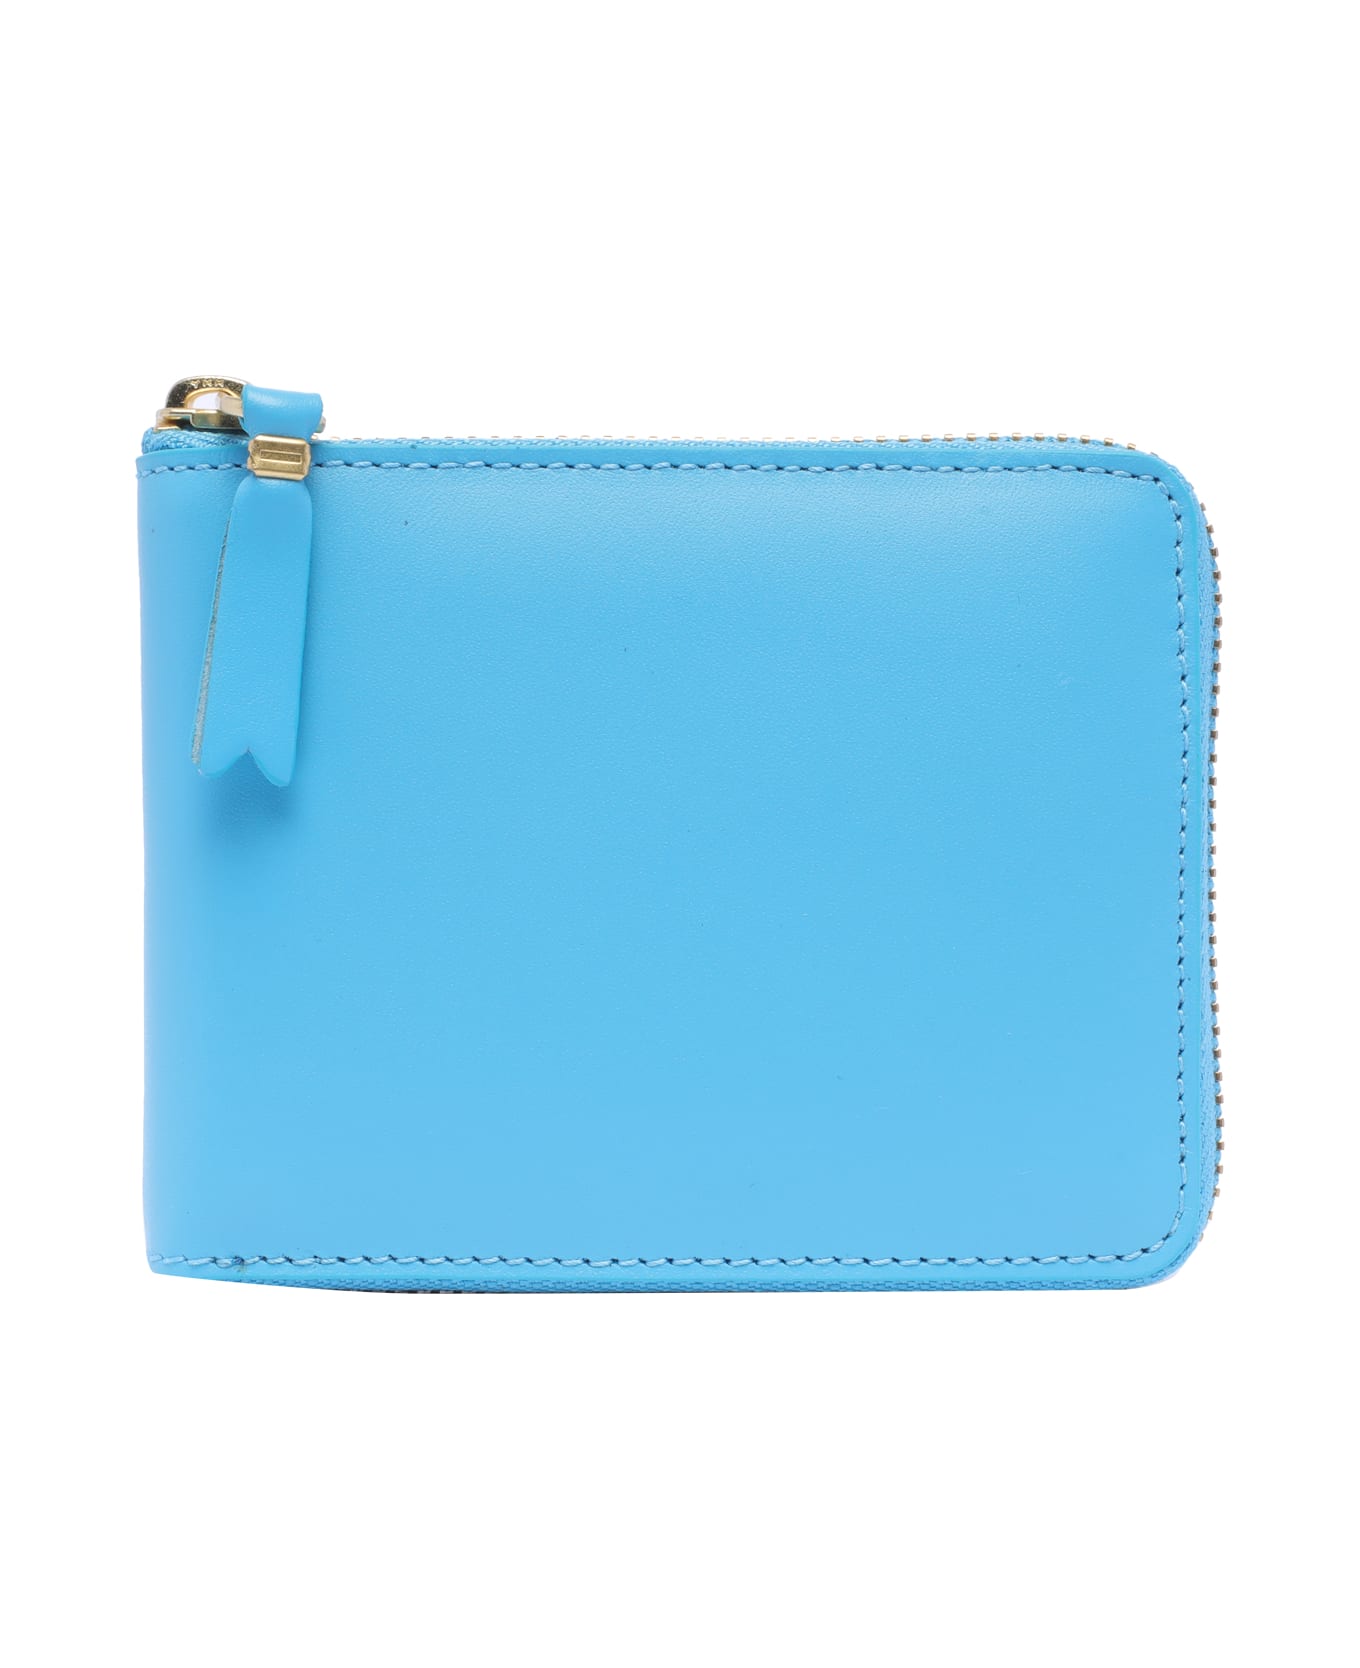 Comme des Garçons Wallet Classic Leather Line Wallet - Clear Blue